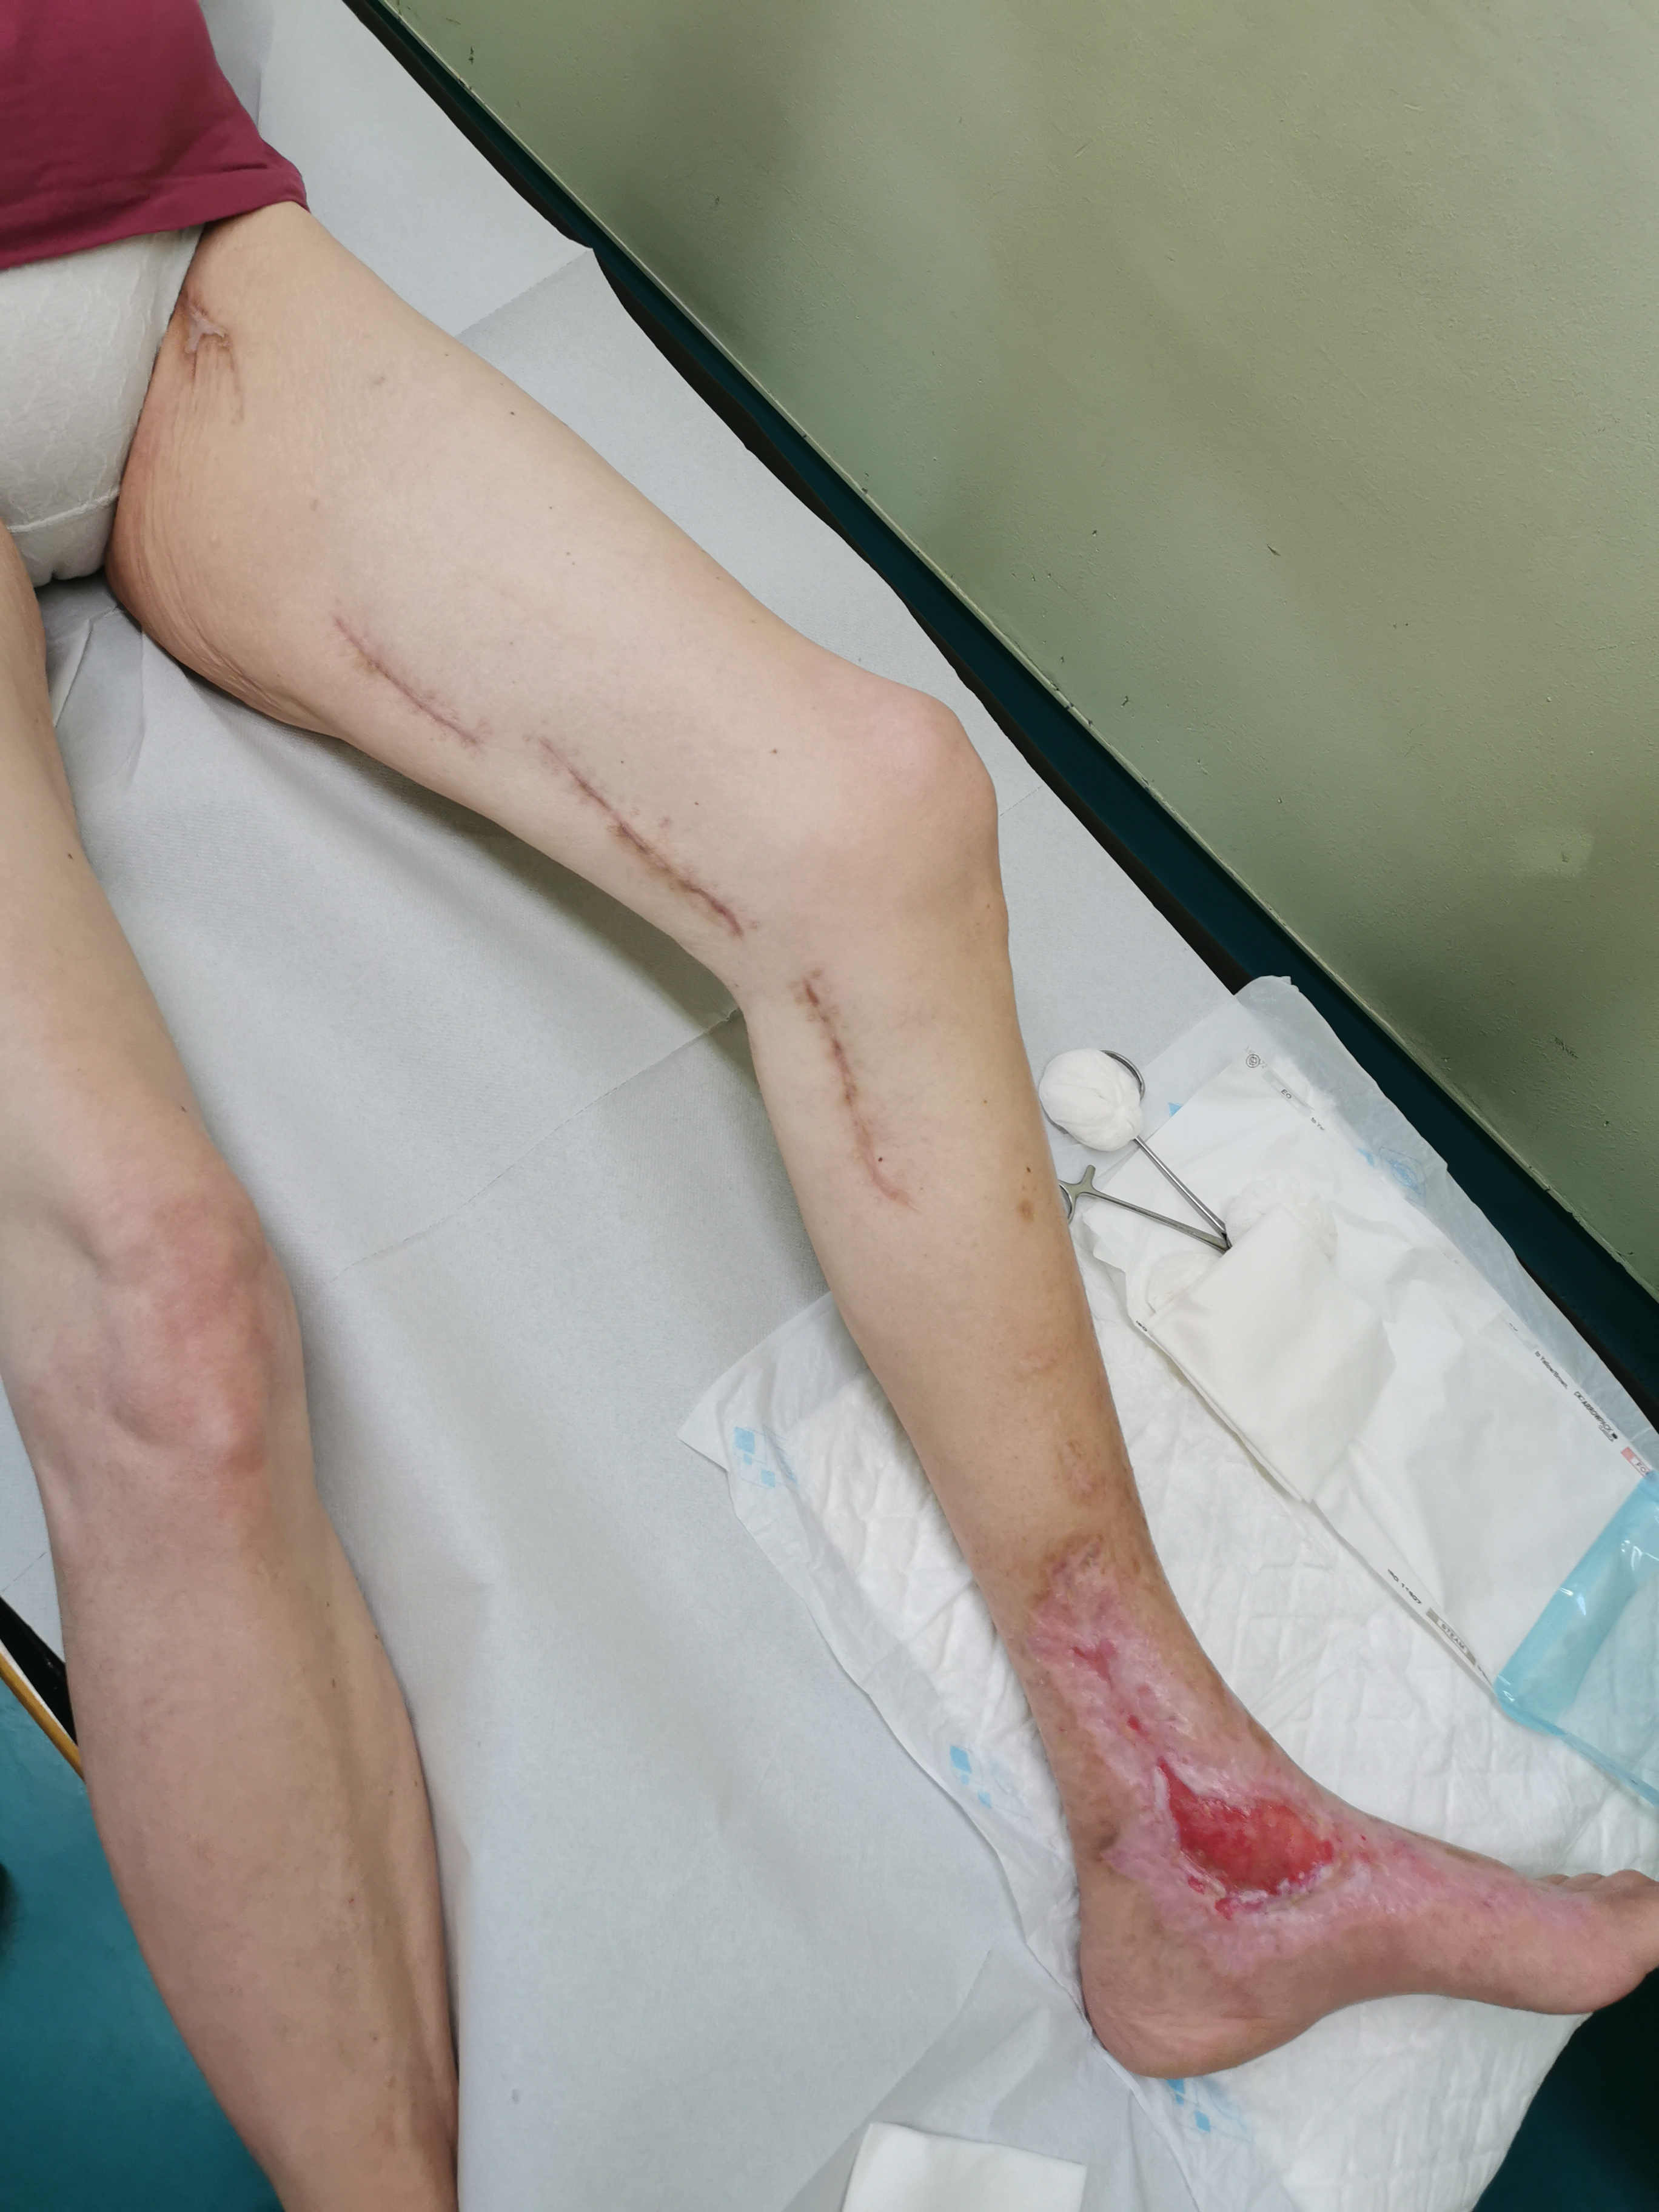 Brazgotine na nogi so lahko edini stranski učinek operativnega posega žile na nogi